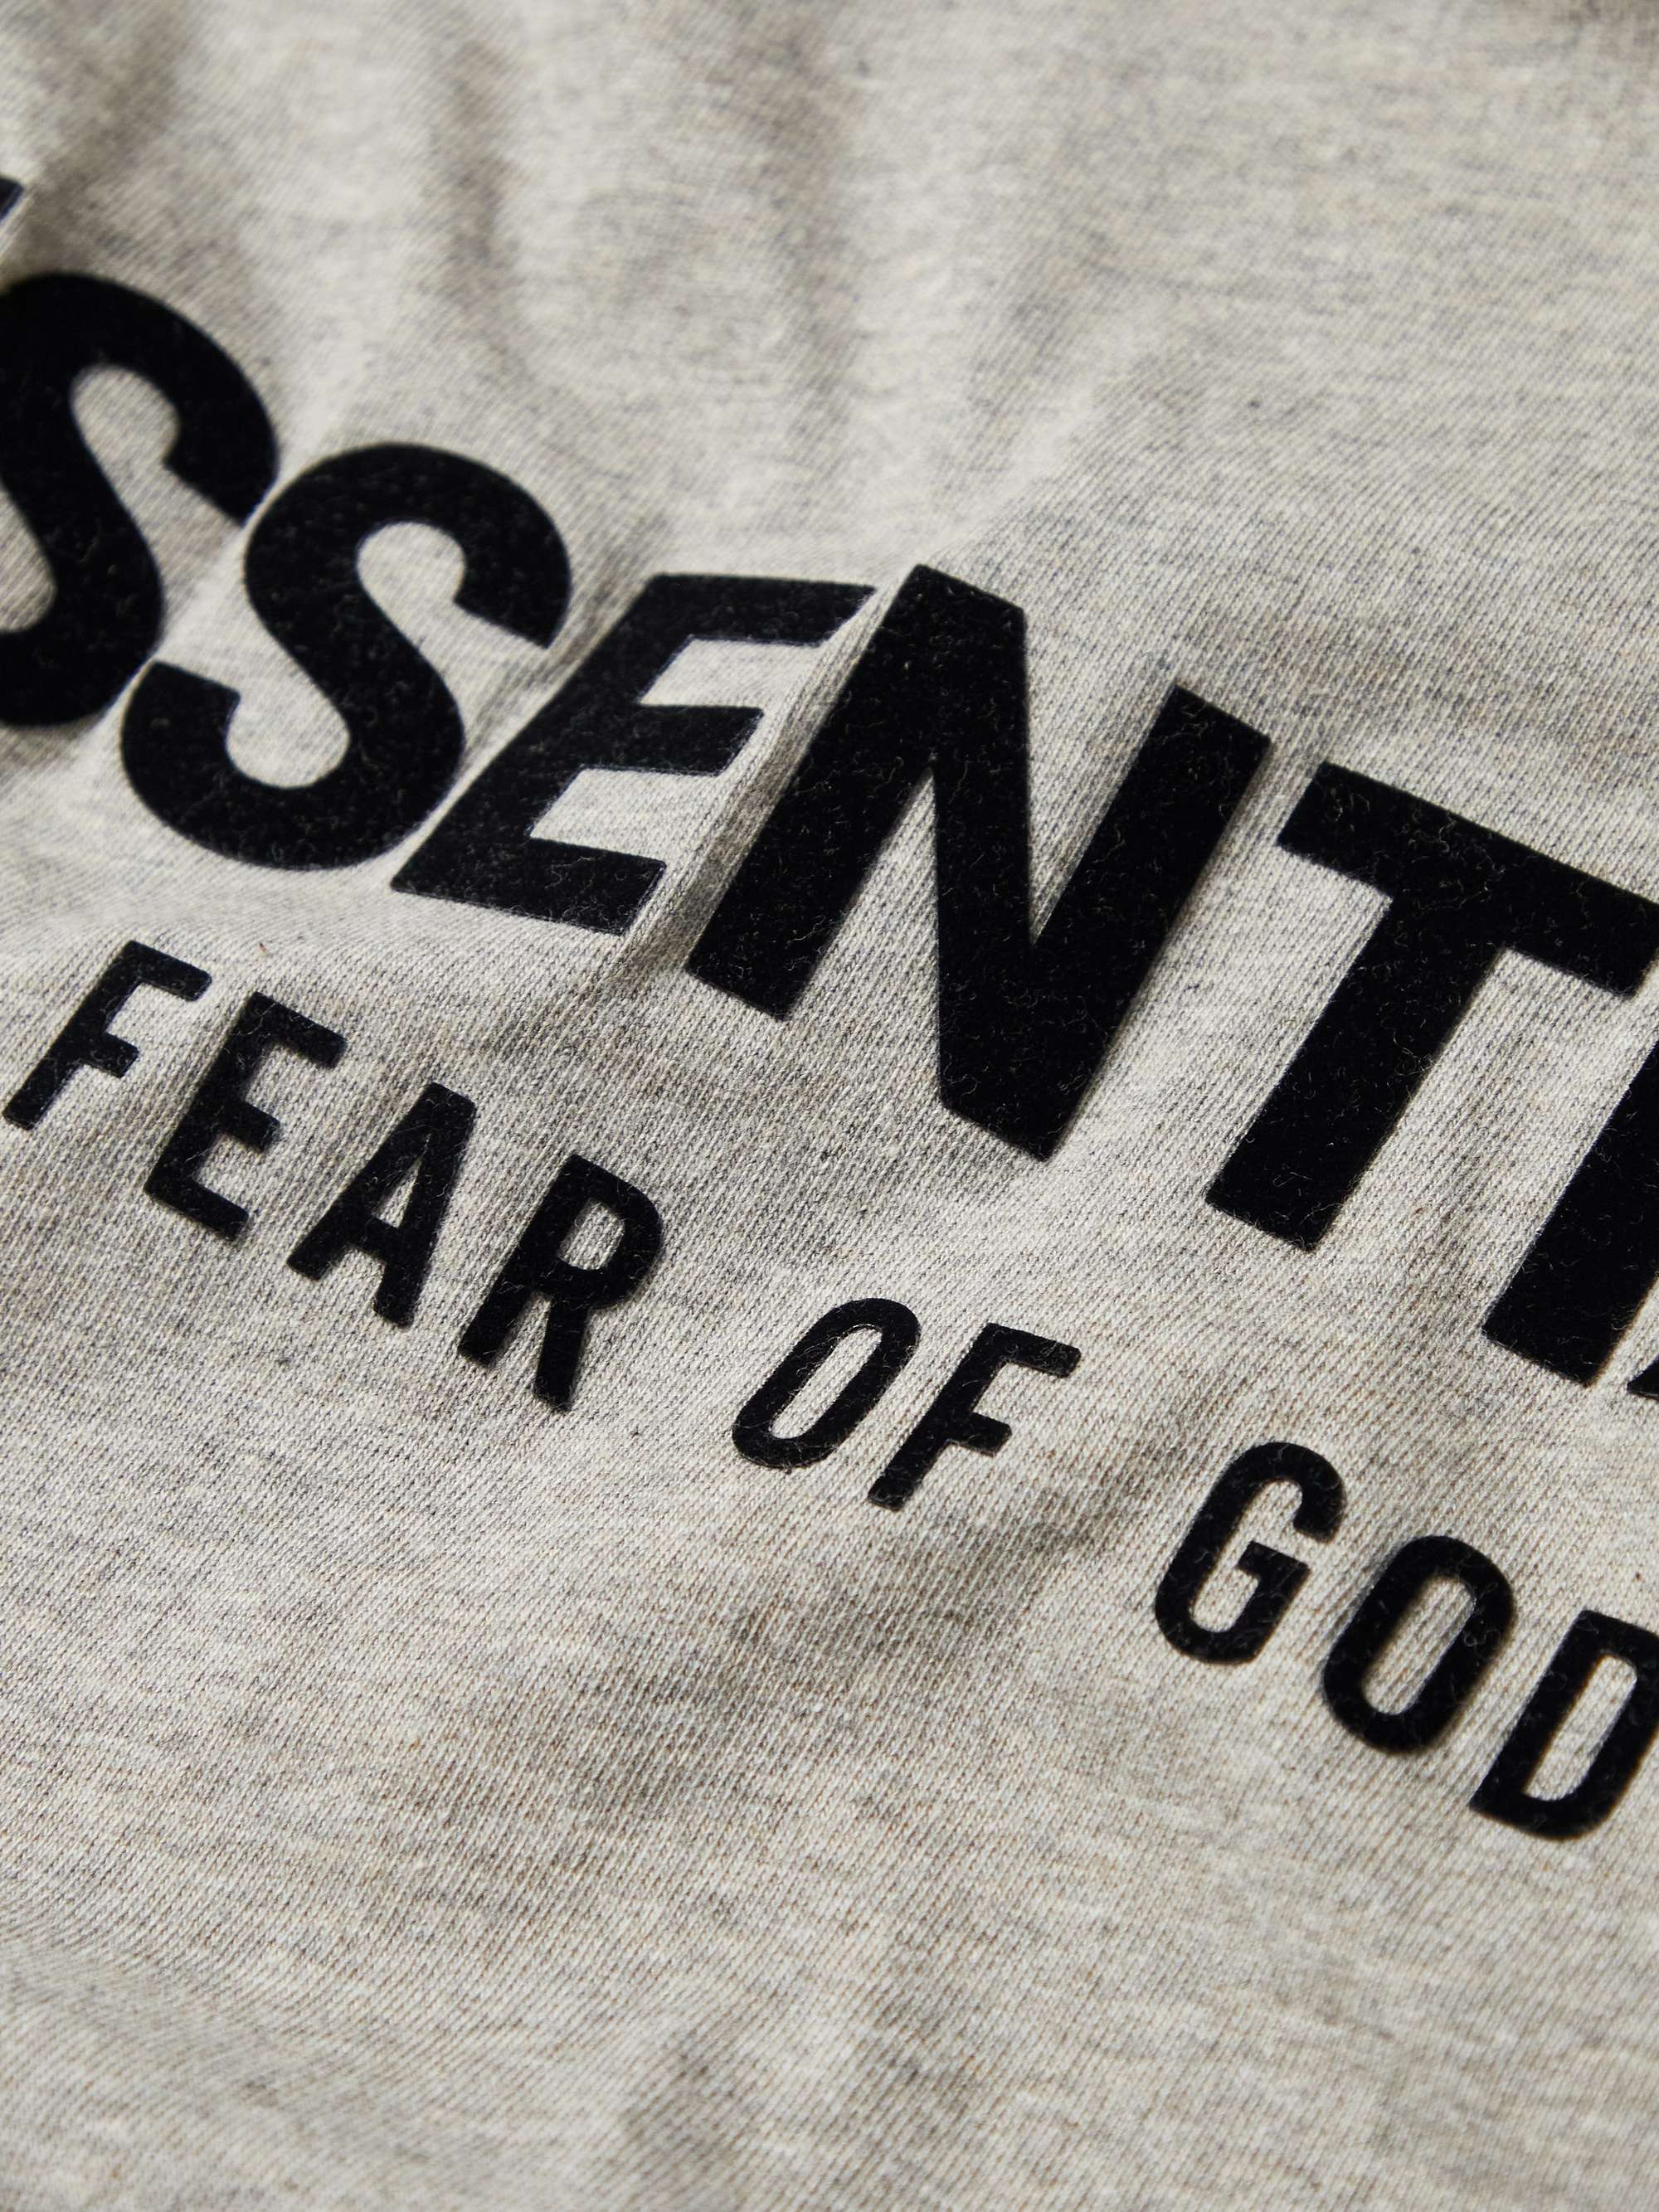 FEAR OF GOD ESSENTIALS Logo-Flocked Cotton-Jersey T-Shirt